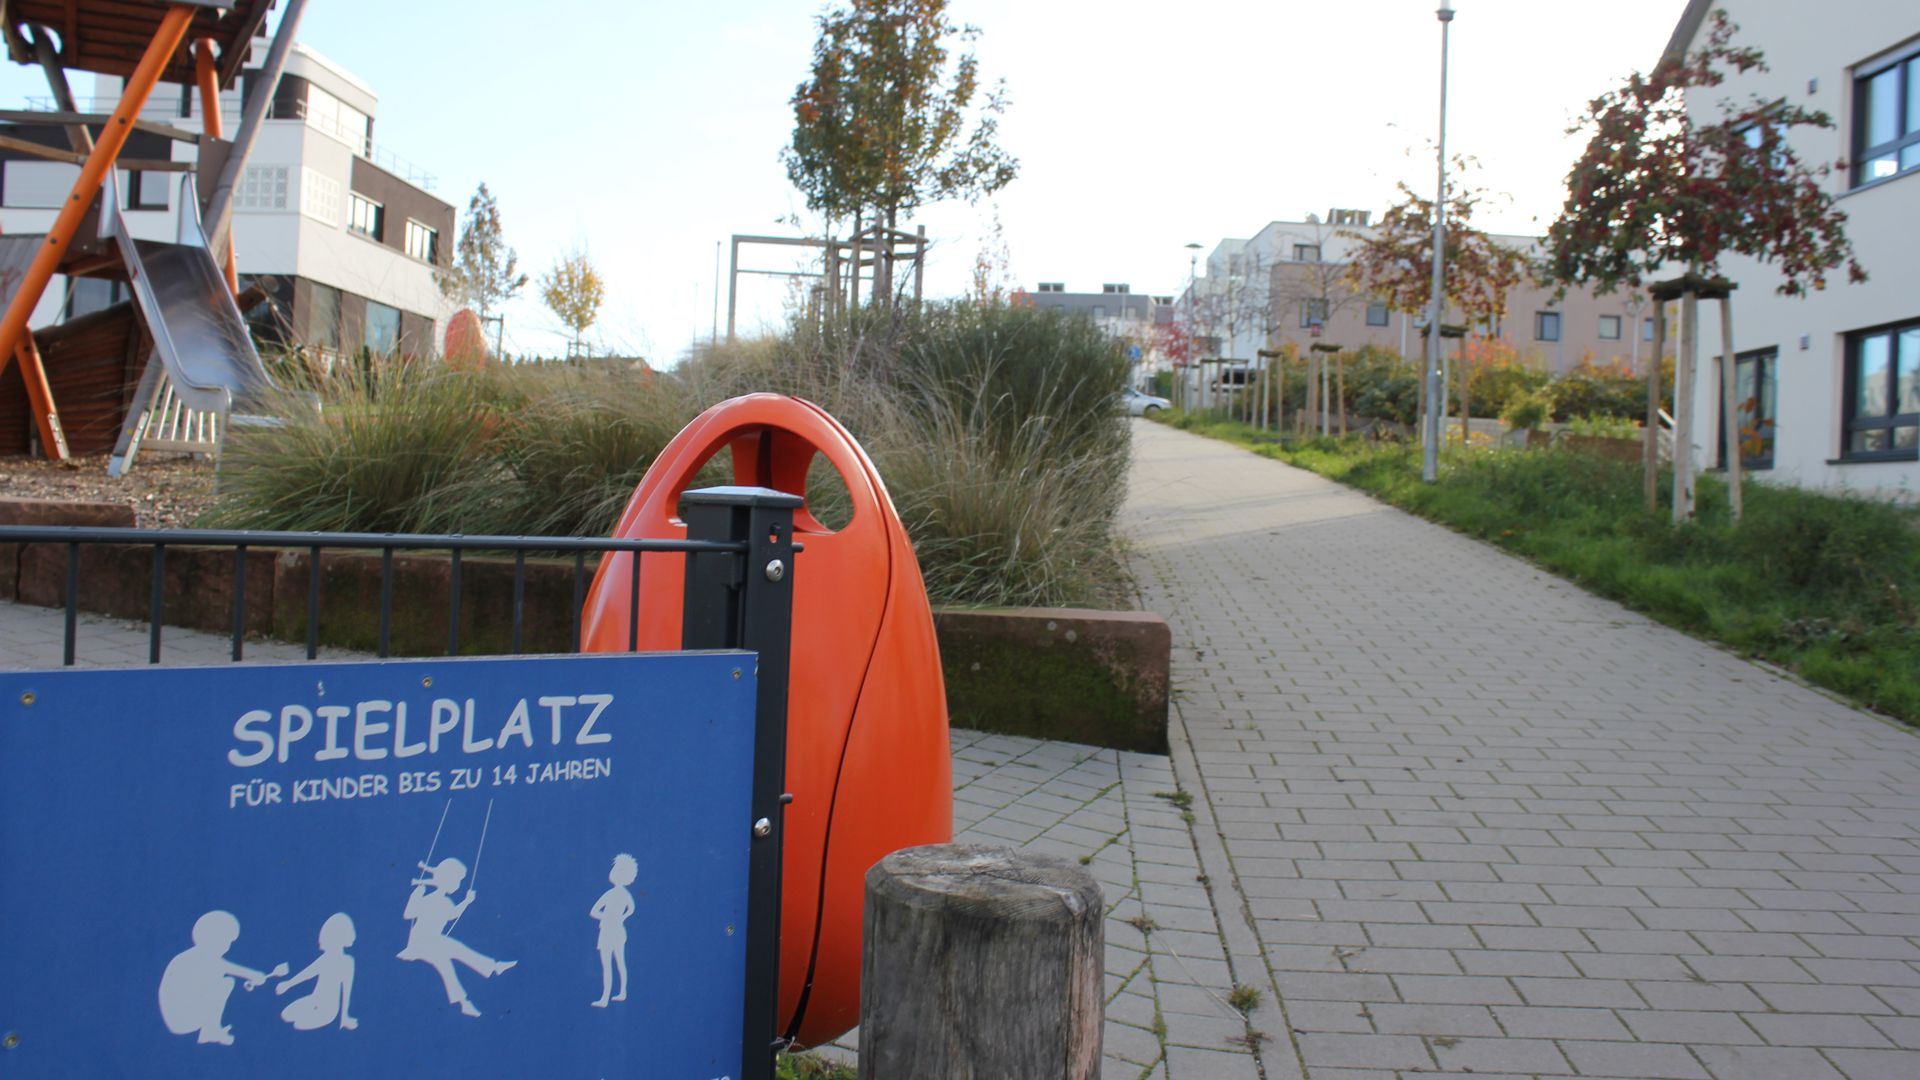 Ähnliche Situation wie im Tiergarten: Den abschüssigen Weg am Spielplatz in der Max-Kassube-Straße in der Südweststadt sieht die CDU als Gefahrenquelle und schlägt eine Barriere, Fahrbahnmarkierung und Hinweisschilder vor.